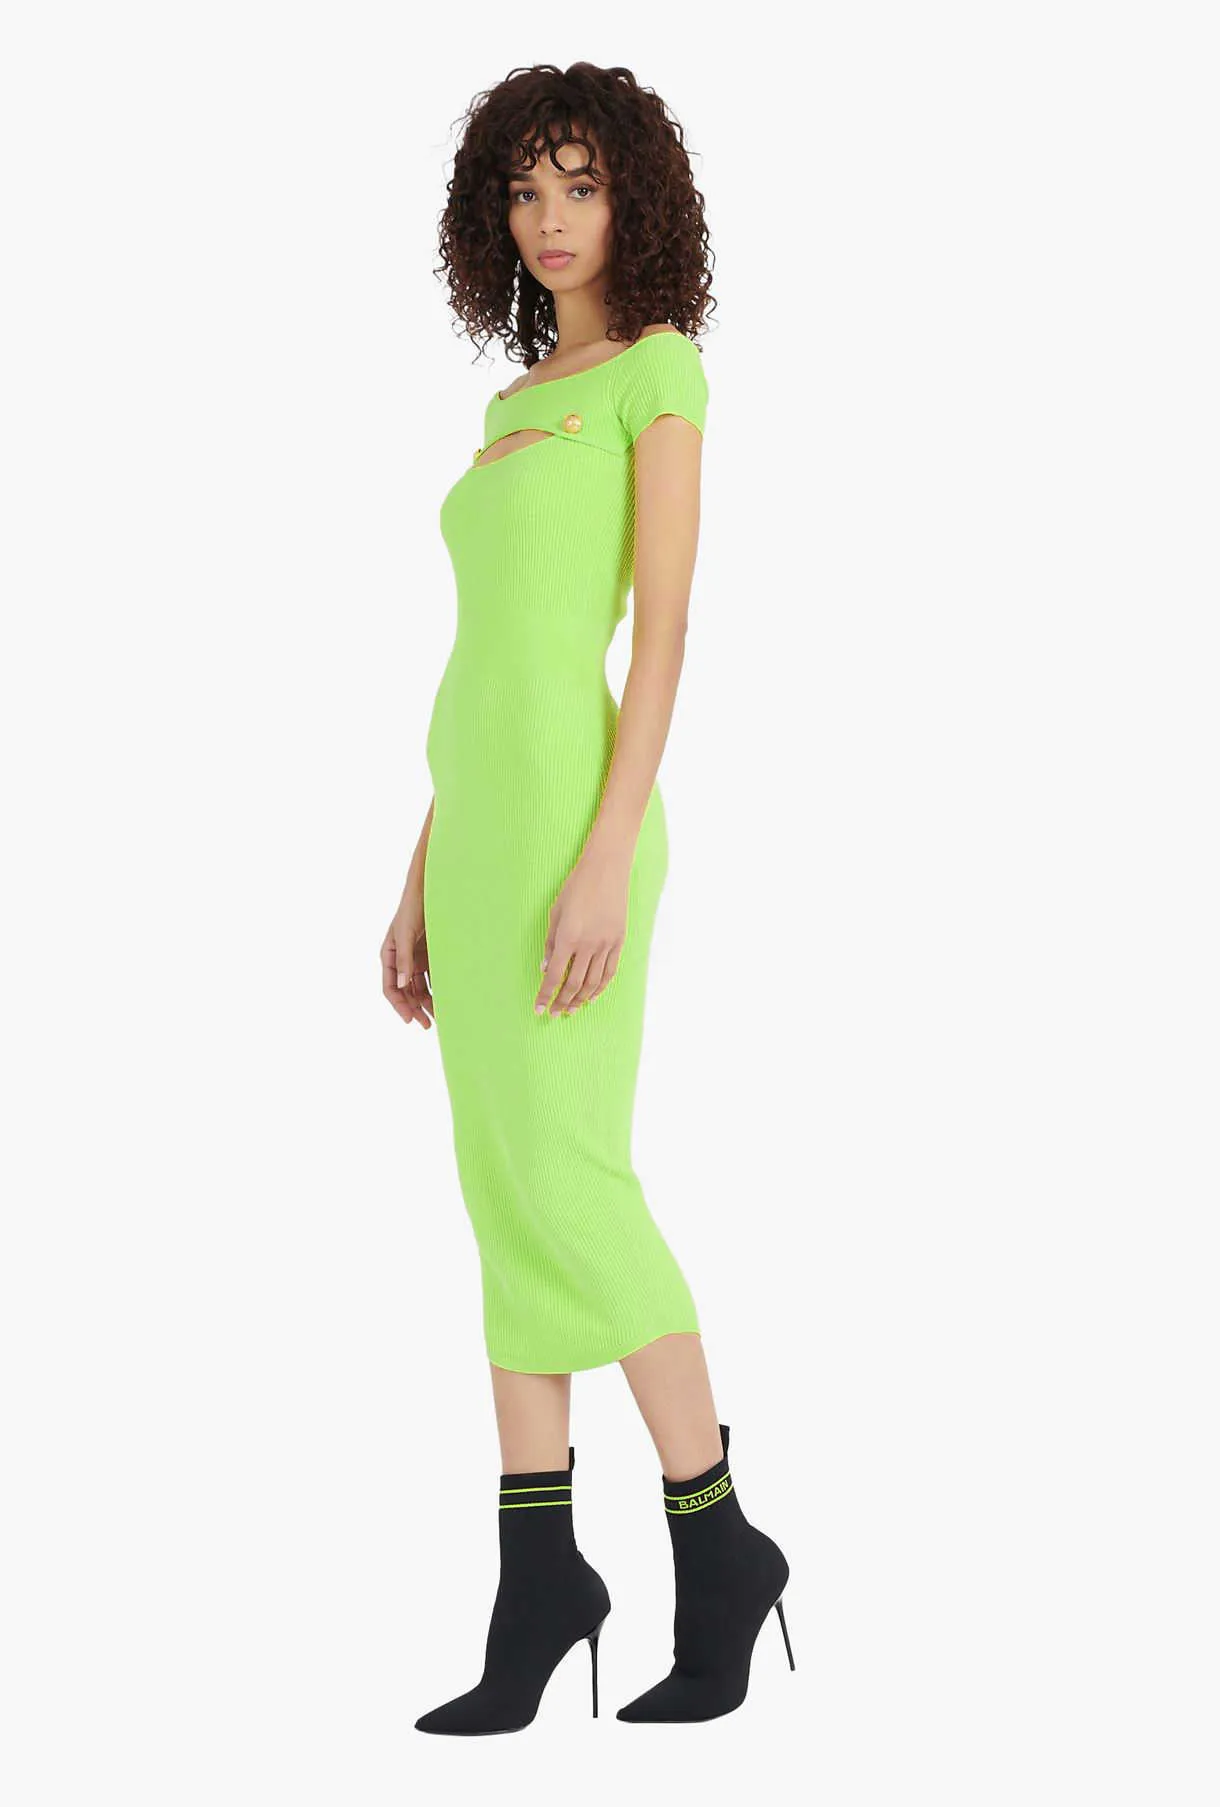 Ocstrade Bandage Dress Arrivo Neon Green Bodycon Donna Estate Sexy Cut Out Midi Party Club Abiti 210527